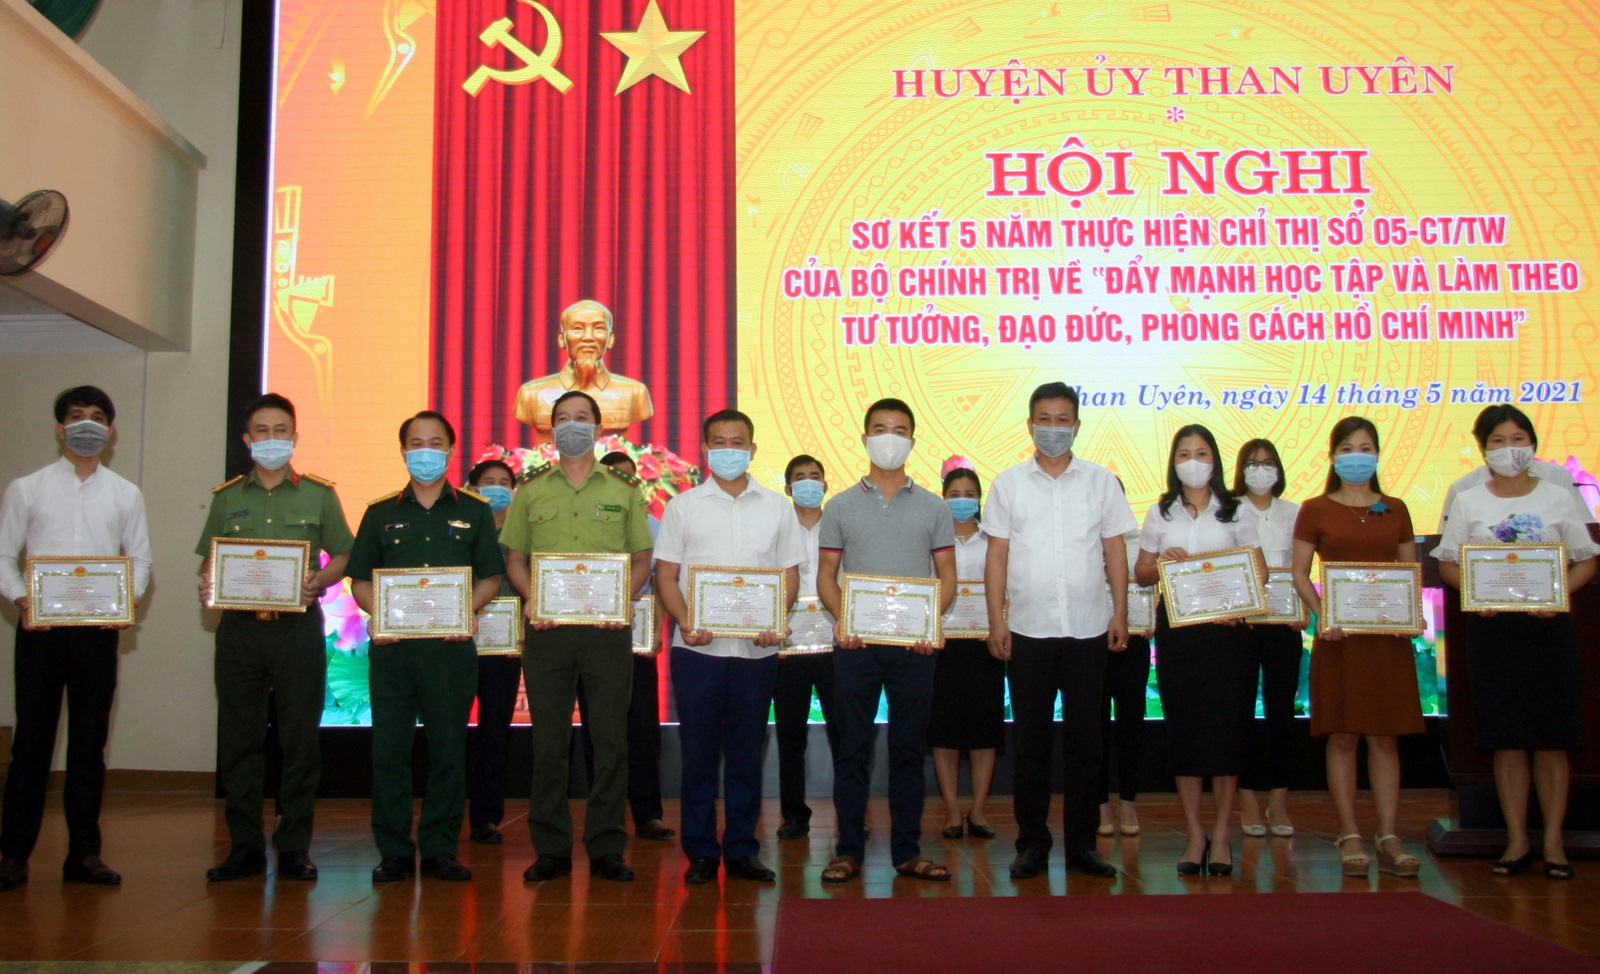 Đồng chí Nguyễn Văn Thăng – Phó Chủ tịch UBND huyện Than Uyên trao giấy khen cho các cá nhân tại điểm cầu trung tâm huyện.